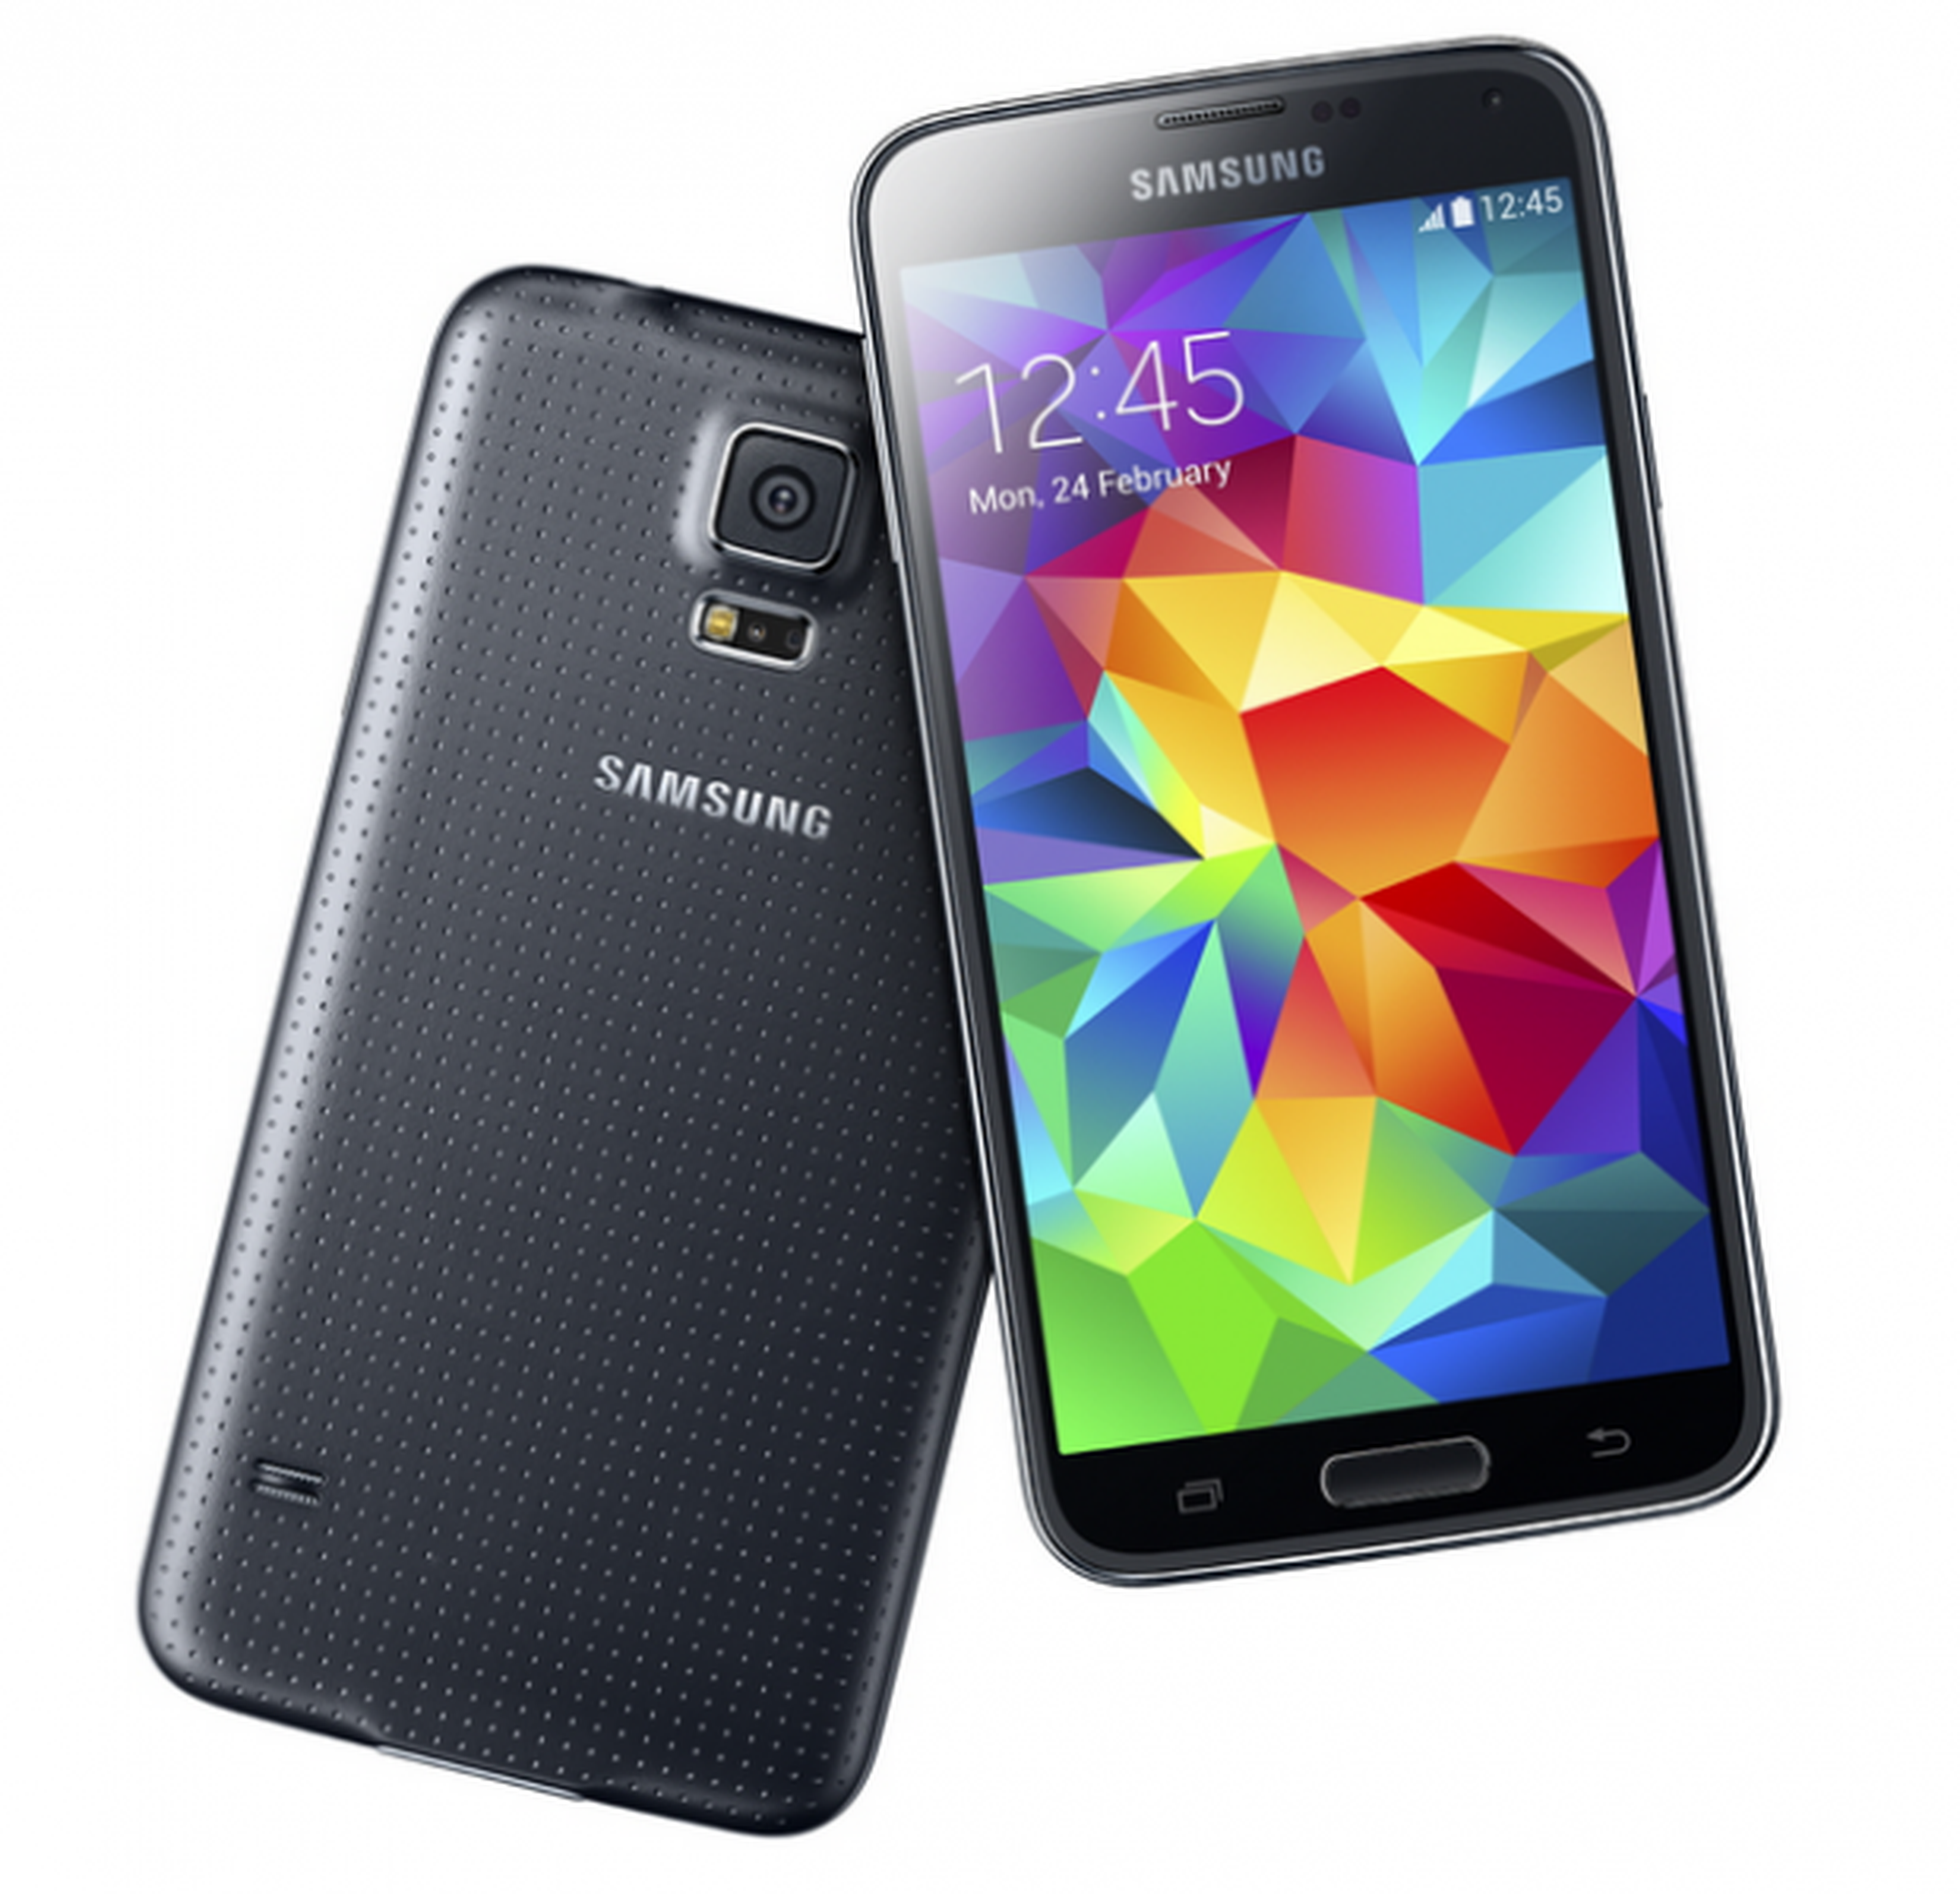 Razones por las que no comprar el nuevo Samsung Galaxy S5